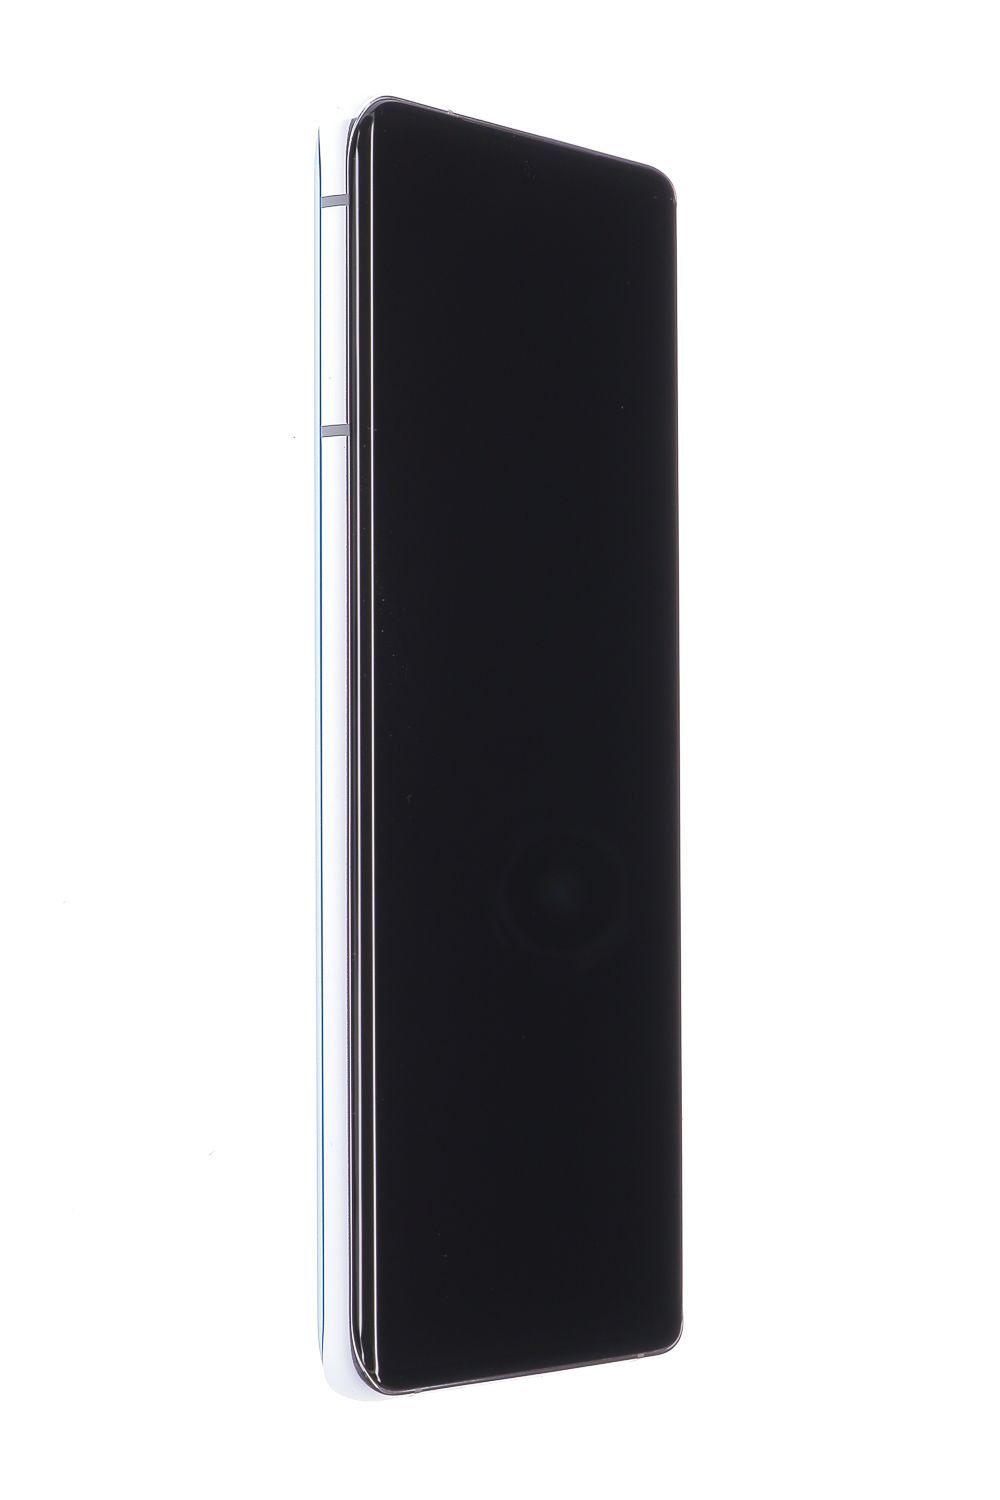 Telefon mobil Samsung Galaxy S21 Ultra 5G Dual Sim, Silver, 256 GB, Foarte Bun